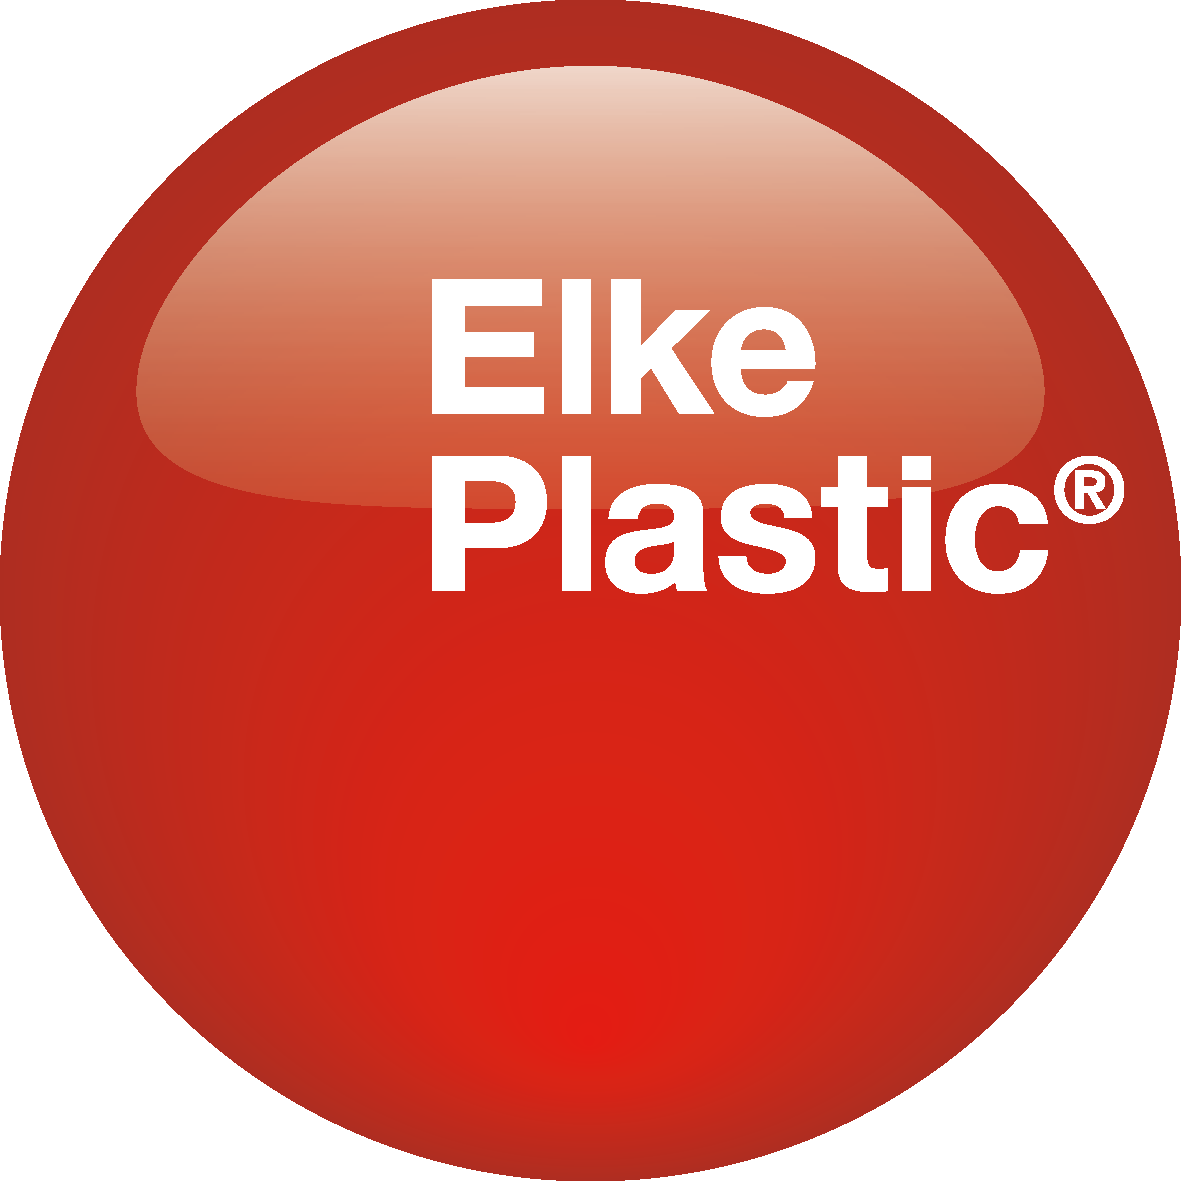 Elke Plastic - Votre professionnel pour les emballages en plastique